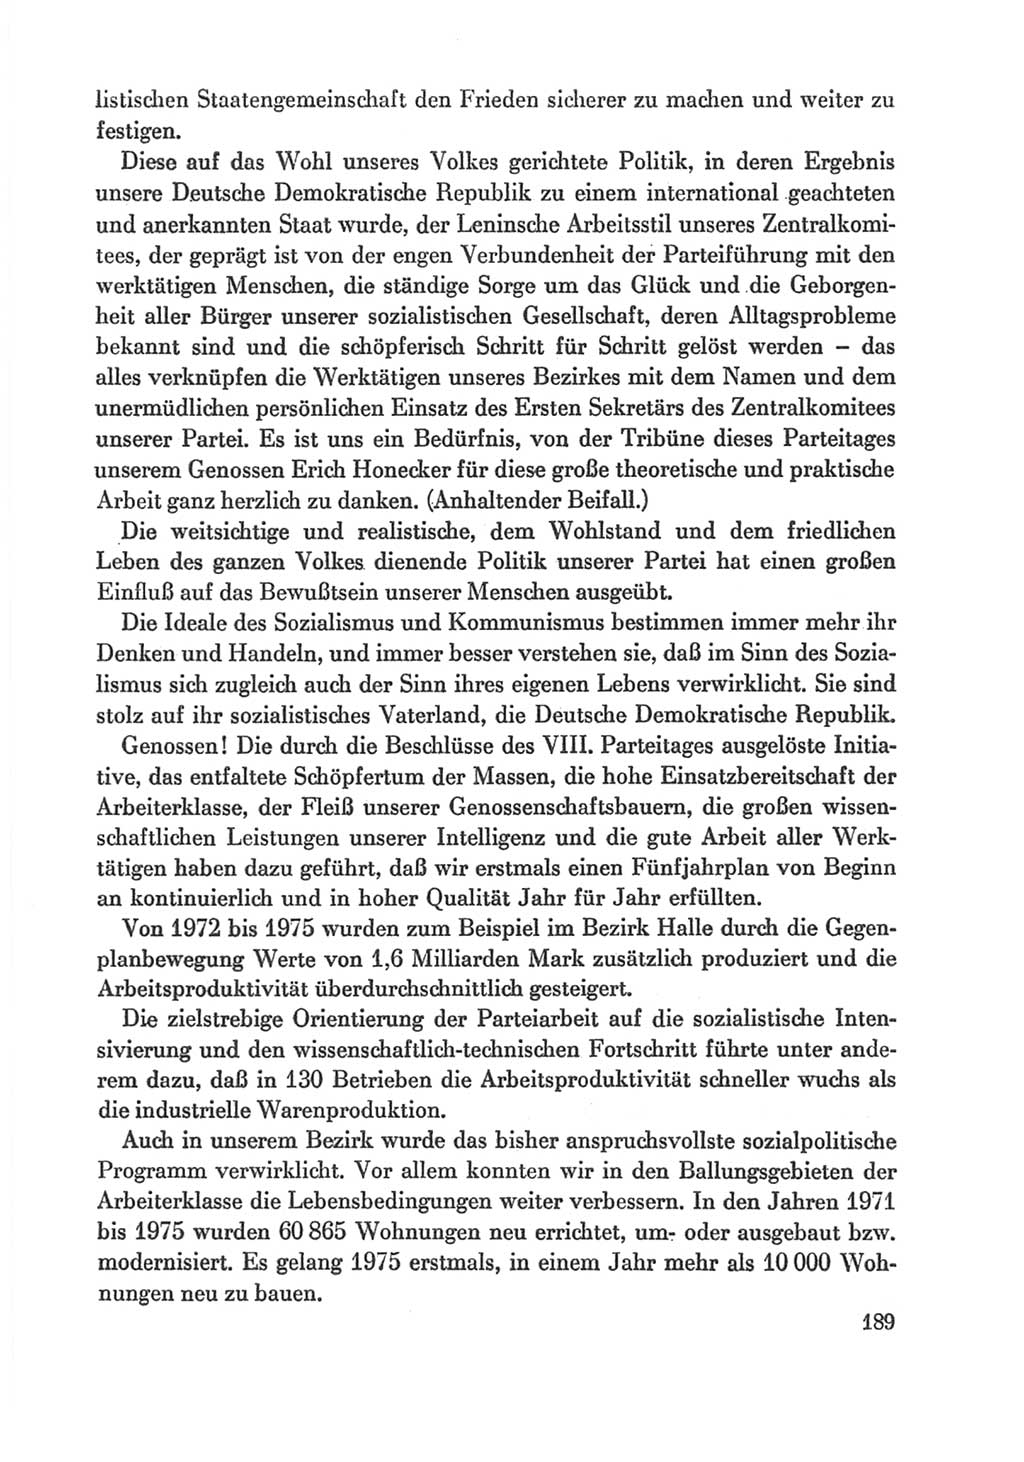 Protokoll der Verhandlungen des Ⅸ. Parteitages der Sozialistischen Einheitspartei Deutschlands (SED) [Deutsche Demokratische Republik (DDR)] 1976, Band 1, Seite 189 (Prot. Verh. Ⅸ. PT SED DDR 1976, Bd. 1, S. 189)